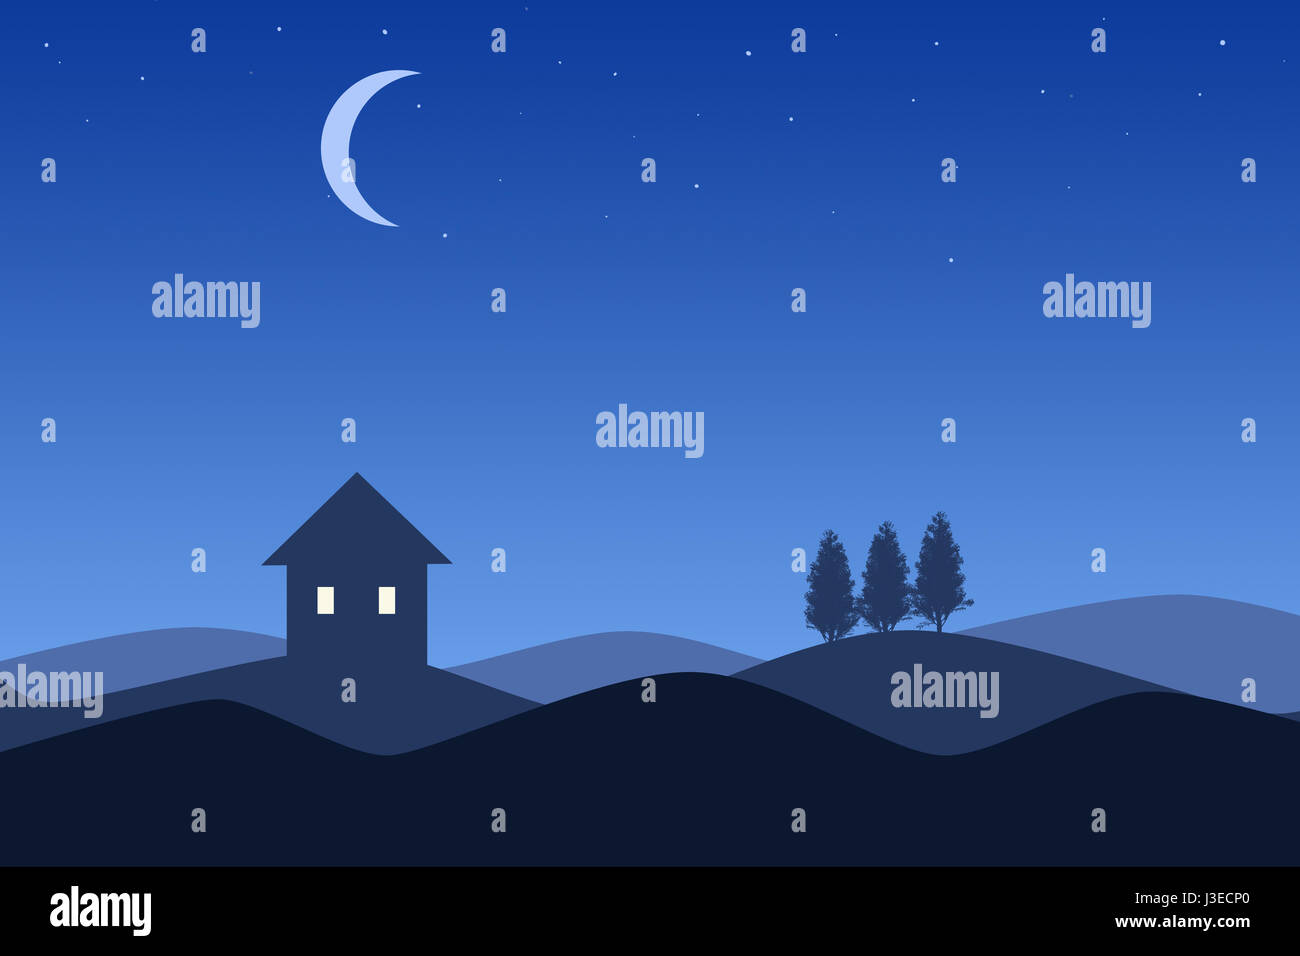 Illustration du dessin animé de trois maisons silhouette de nuit sous un ciel dégradé bleu et la lune. Banque D'Images